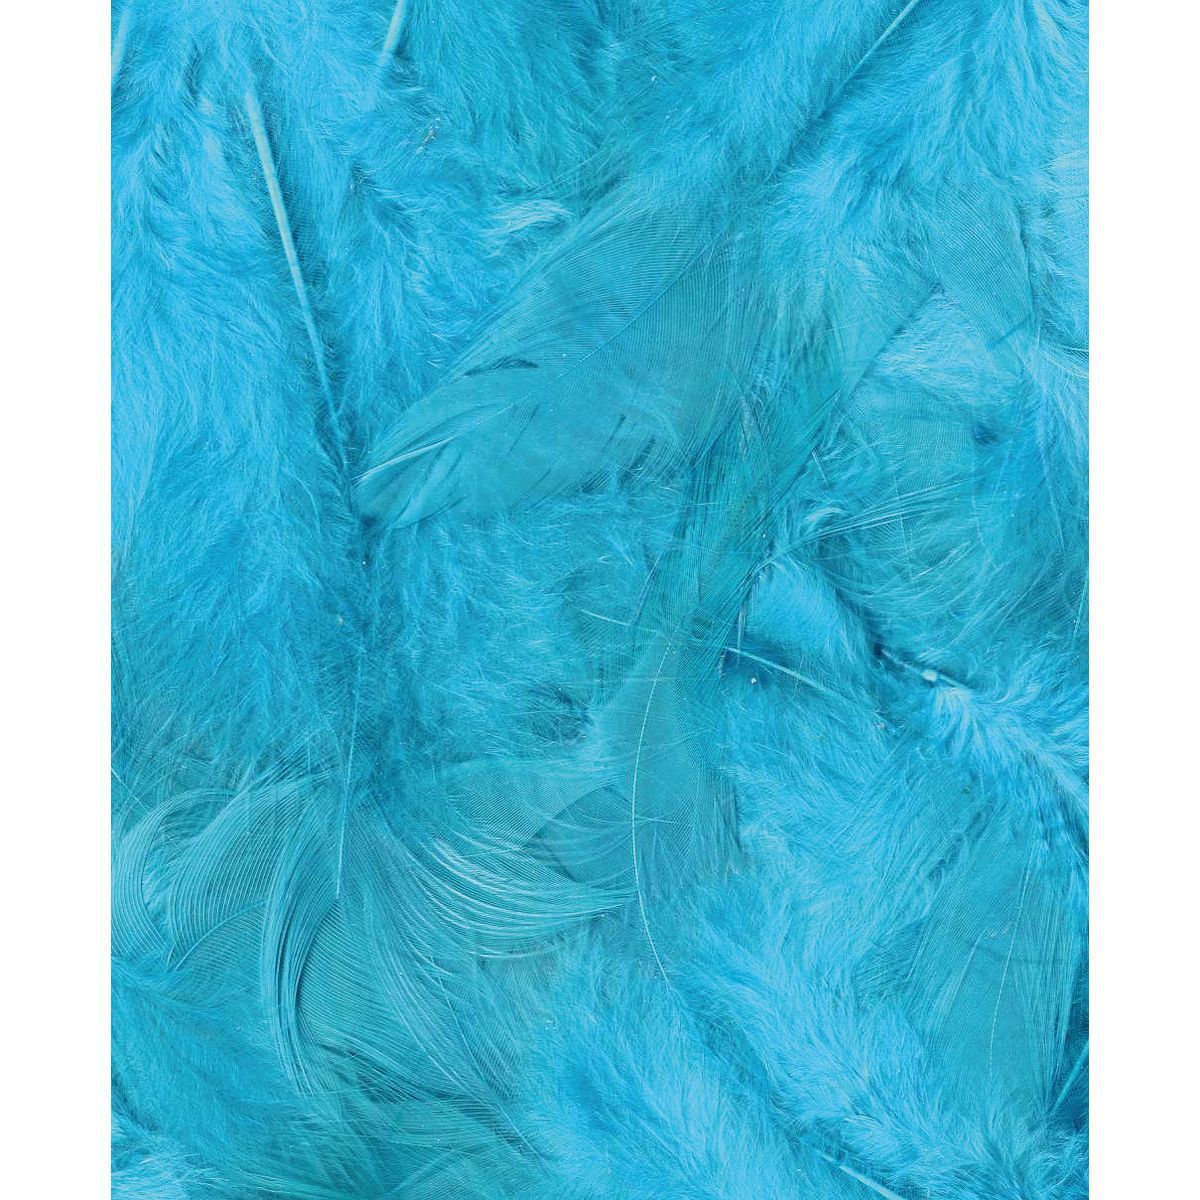 Artémio Plumes Ébouriffées Turquoise 3 g Lg 8 à 12 cm